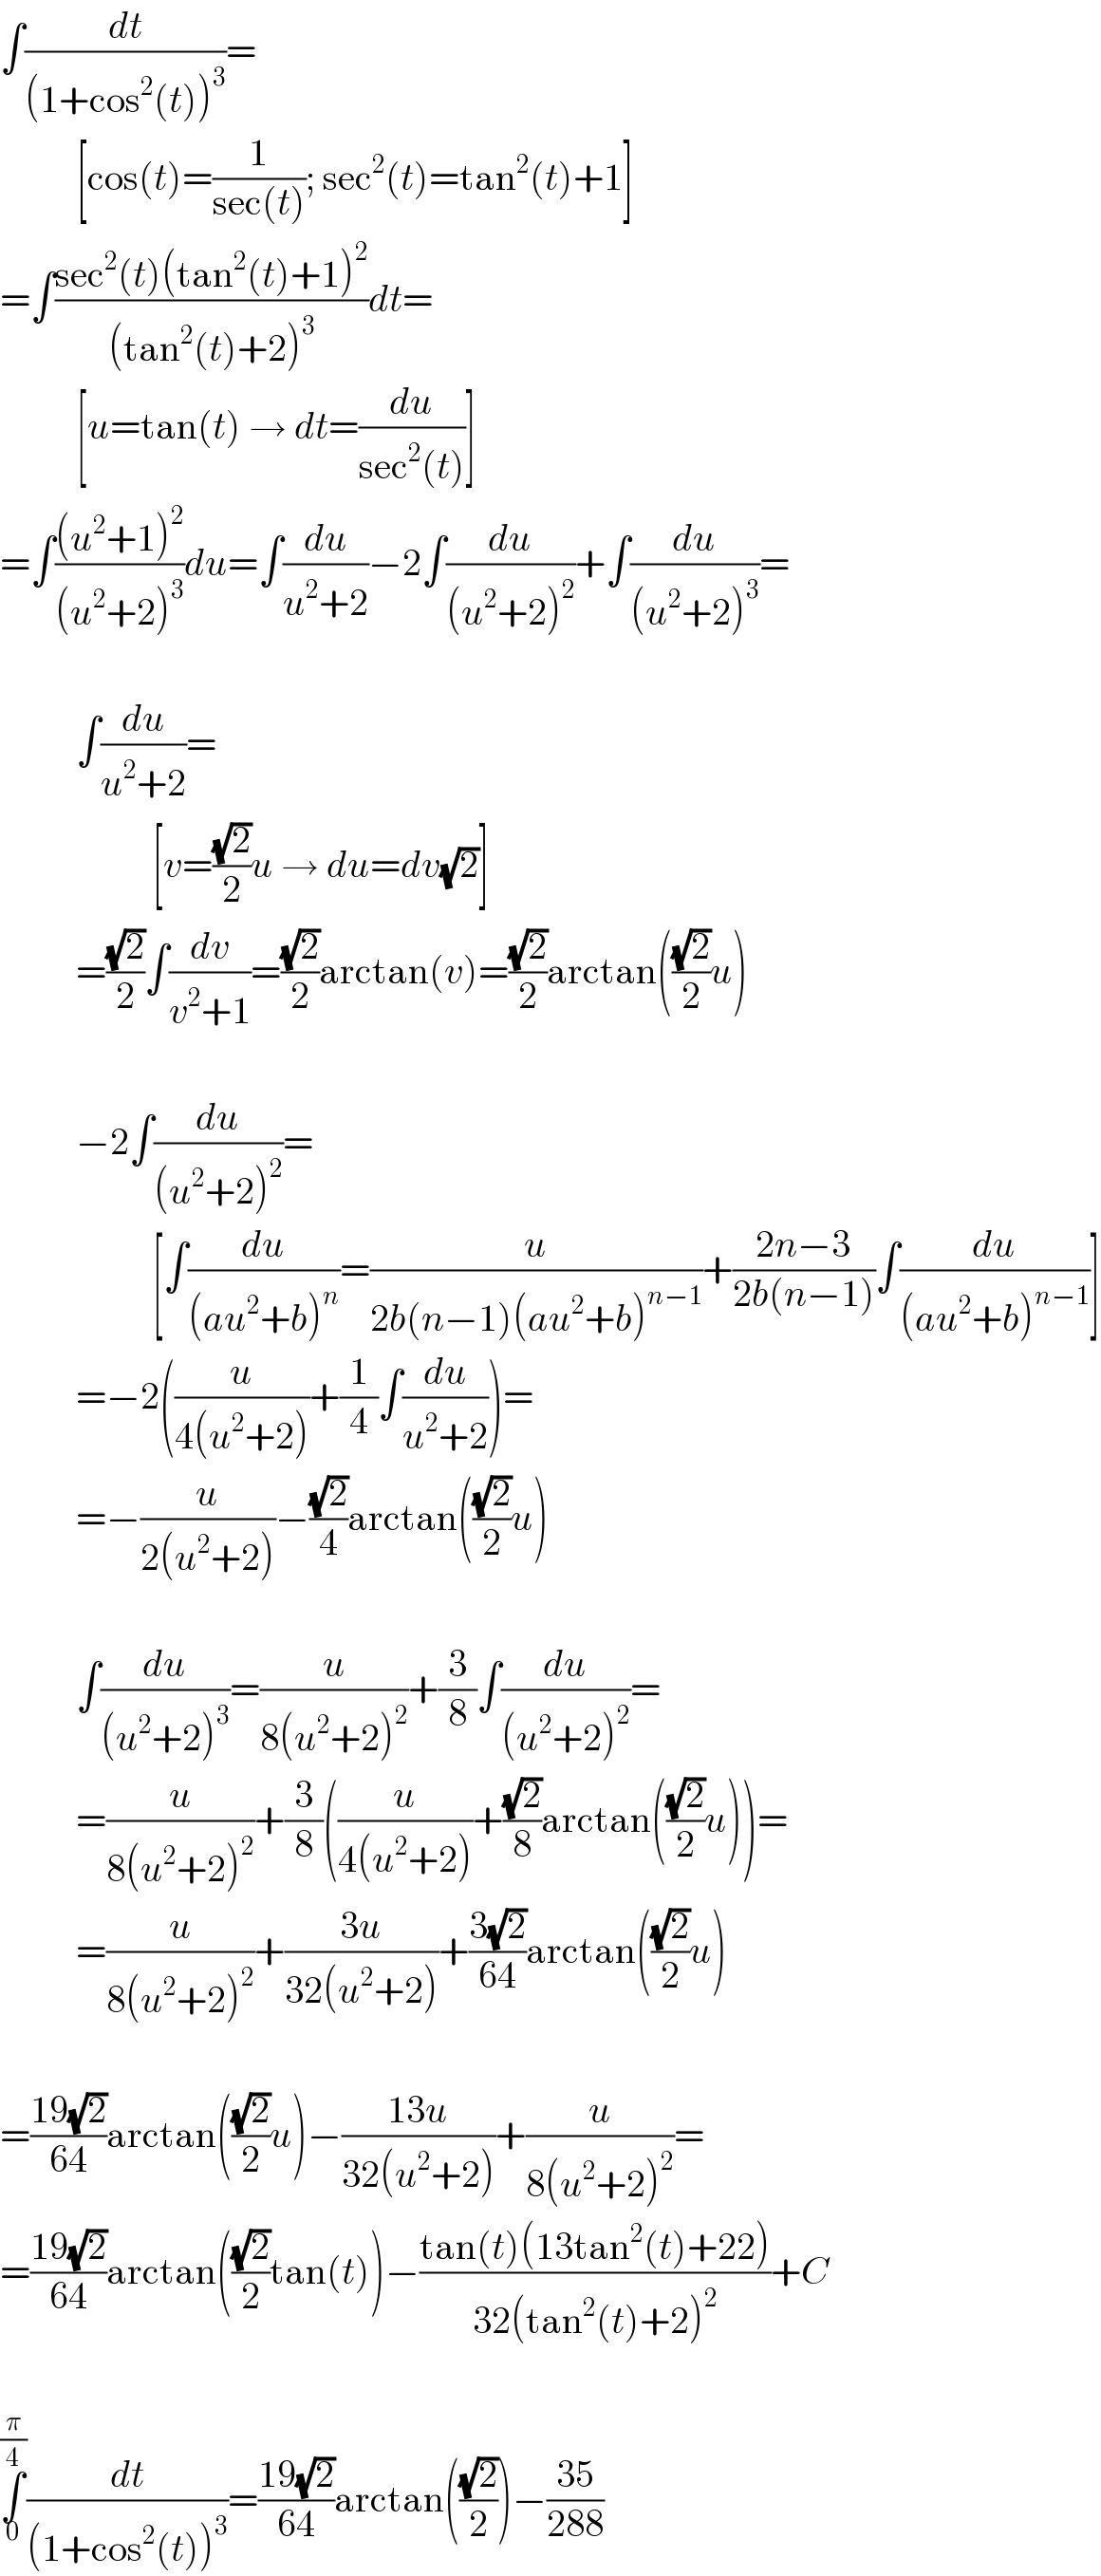 ∫(dt/((1+cos^2 (t))^3 ))=            [cos(t)=(1/(sec(t))); sec^2 (t)=tan^2 (t)+1]  =∫((sec^2 (t)(tan^2 (t)+1)^2 )/((tan^2 (t)+2)^3 ))dt=            [u=tan(t) → dt=(du/(sec^2 (t)))]  =∫(((u^2 +1)^2 )/((u^2 +2)^3 ))du=∫(du/(u^2 +2))−2∫(du/((u^2 +2)^2 ))+∫(du/((u^2 +2)^3 ))=              ∫(du/(u^2 +2))=                      [v=((√2)/2)u → du=dv(√2)]            =((√2)/2)∫(dv/(v^2 +1))=((√2)/2)arctan(v)=((√2)/2)arctan(((√2)/2)u)              −2∫(du/((u^2 +2)^2 ))=                      [∫(du/((au^2 +b)^n ))=(u/(2b(n−1)(au^2 +b)^(n−1) ))+((2n−3)/(2b(n−1)))∫(du/((au^2 +b)^(n−1) ))]            =−2((u/(4(u^2 +2)))+(1/4)∫(du/(u^2 +2)))=            =−(u/(2(u^2 +2)))−((√2)/4)arctan(((√2)/2)u)              ∫(du/((u^2 +2)^3 ))=(u/(8(u^2 +2)^2 ))+(3/8)∫(du/((u^2 +2)^2 ))=            =(u/(8(u^2 +2)^2 ))+(3/8)((u/(4(u^2 +2)))+((√2)/8)arctan(((√2)/2)u))=            =(u/(8(u^2 +2)^2 ))+((3u)/(32(u^2 +2)))+((3(√2))/(64))arctan(((√2)/2)u)    =((19(√2))/(64))arctan(((√2)/2)u)−((13u)/(32(u^2 +2)))+(u/(8(u^2 +2)^2 ))=  =((19(√2))/(64))arctan(((√2)/2)tan(t))−((tan(t)(13tan^2 (t)+22))/(32(tan^2 (t)+2)^2 ))+C    ∫_0 ^(π/4) (dt/((1+cos^2 (t))^3 ))=((19(√2))/(64))arctan(((√2)/2))−((35)/(288))  